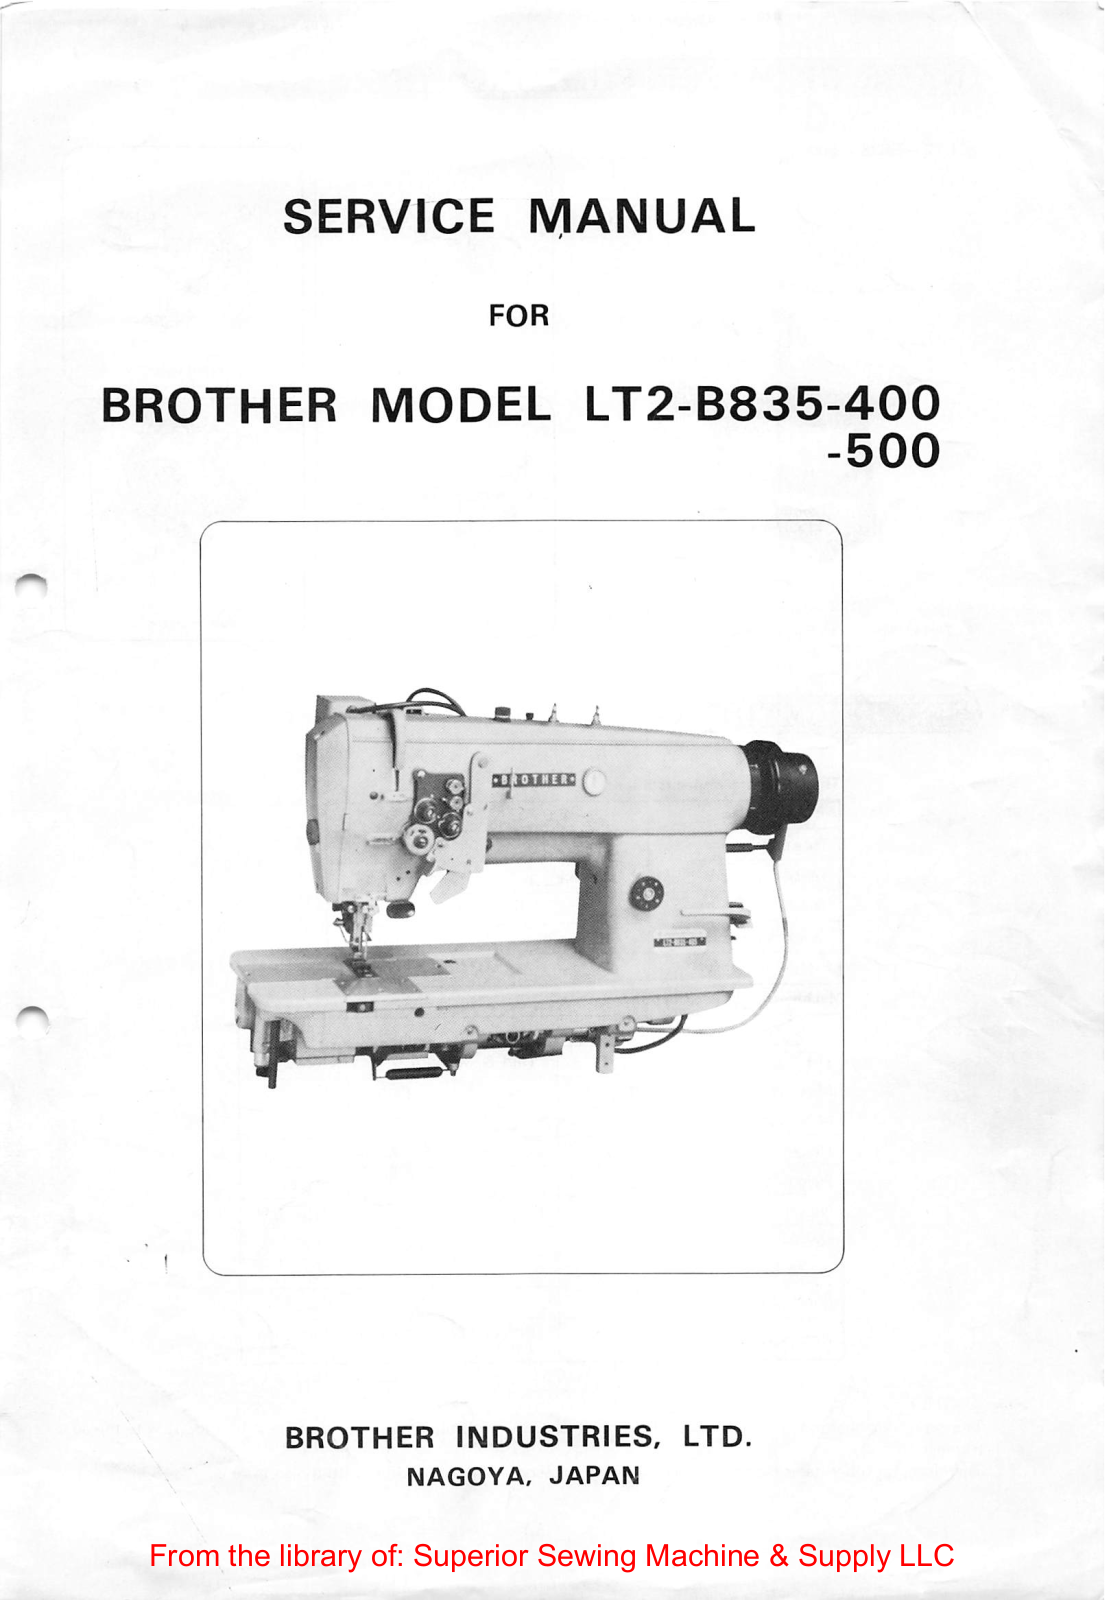 Brother LT2-B835-400, LT2-B835-500 Service Manual